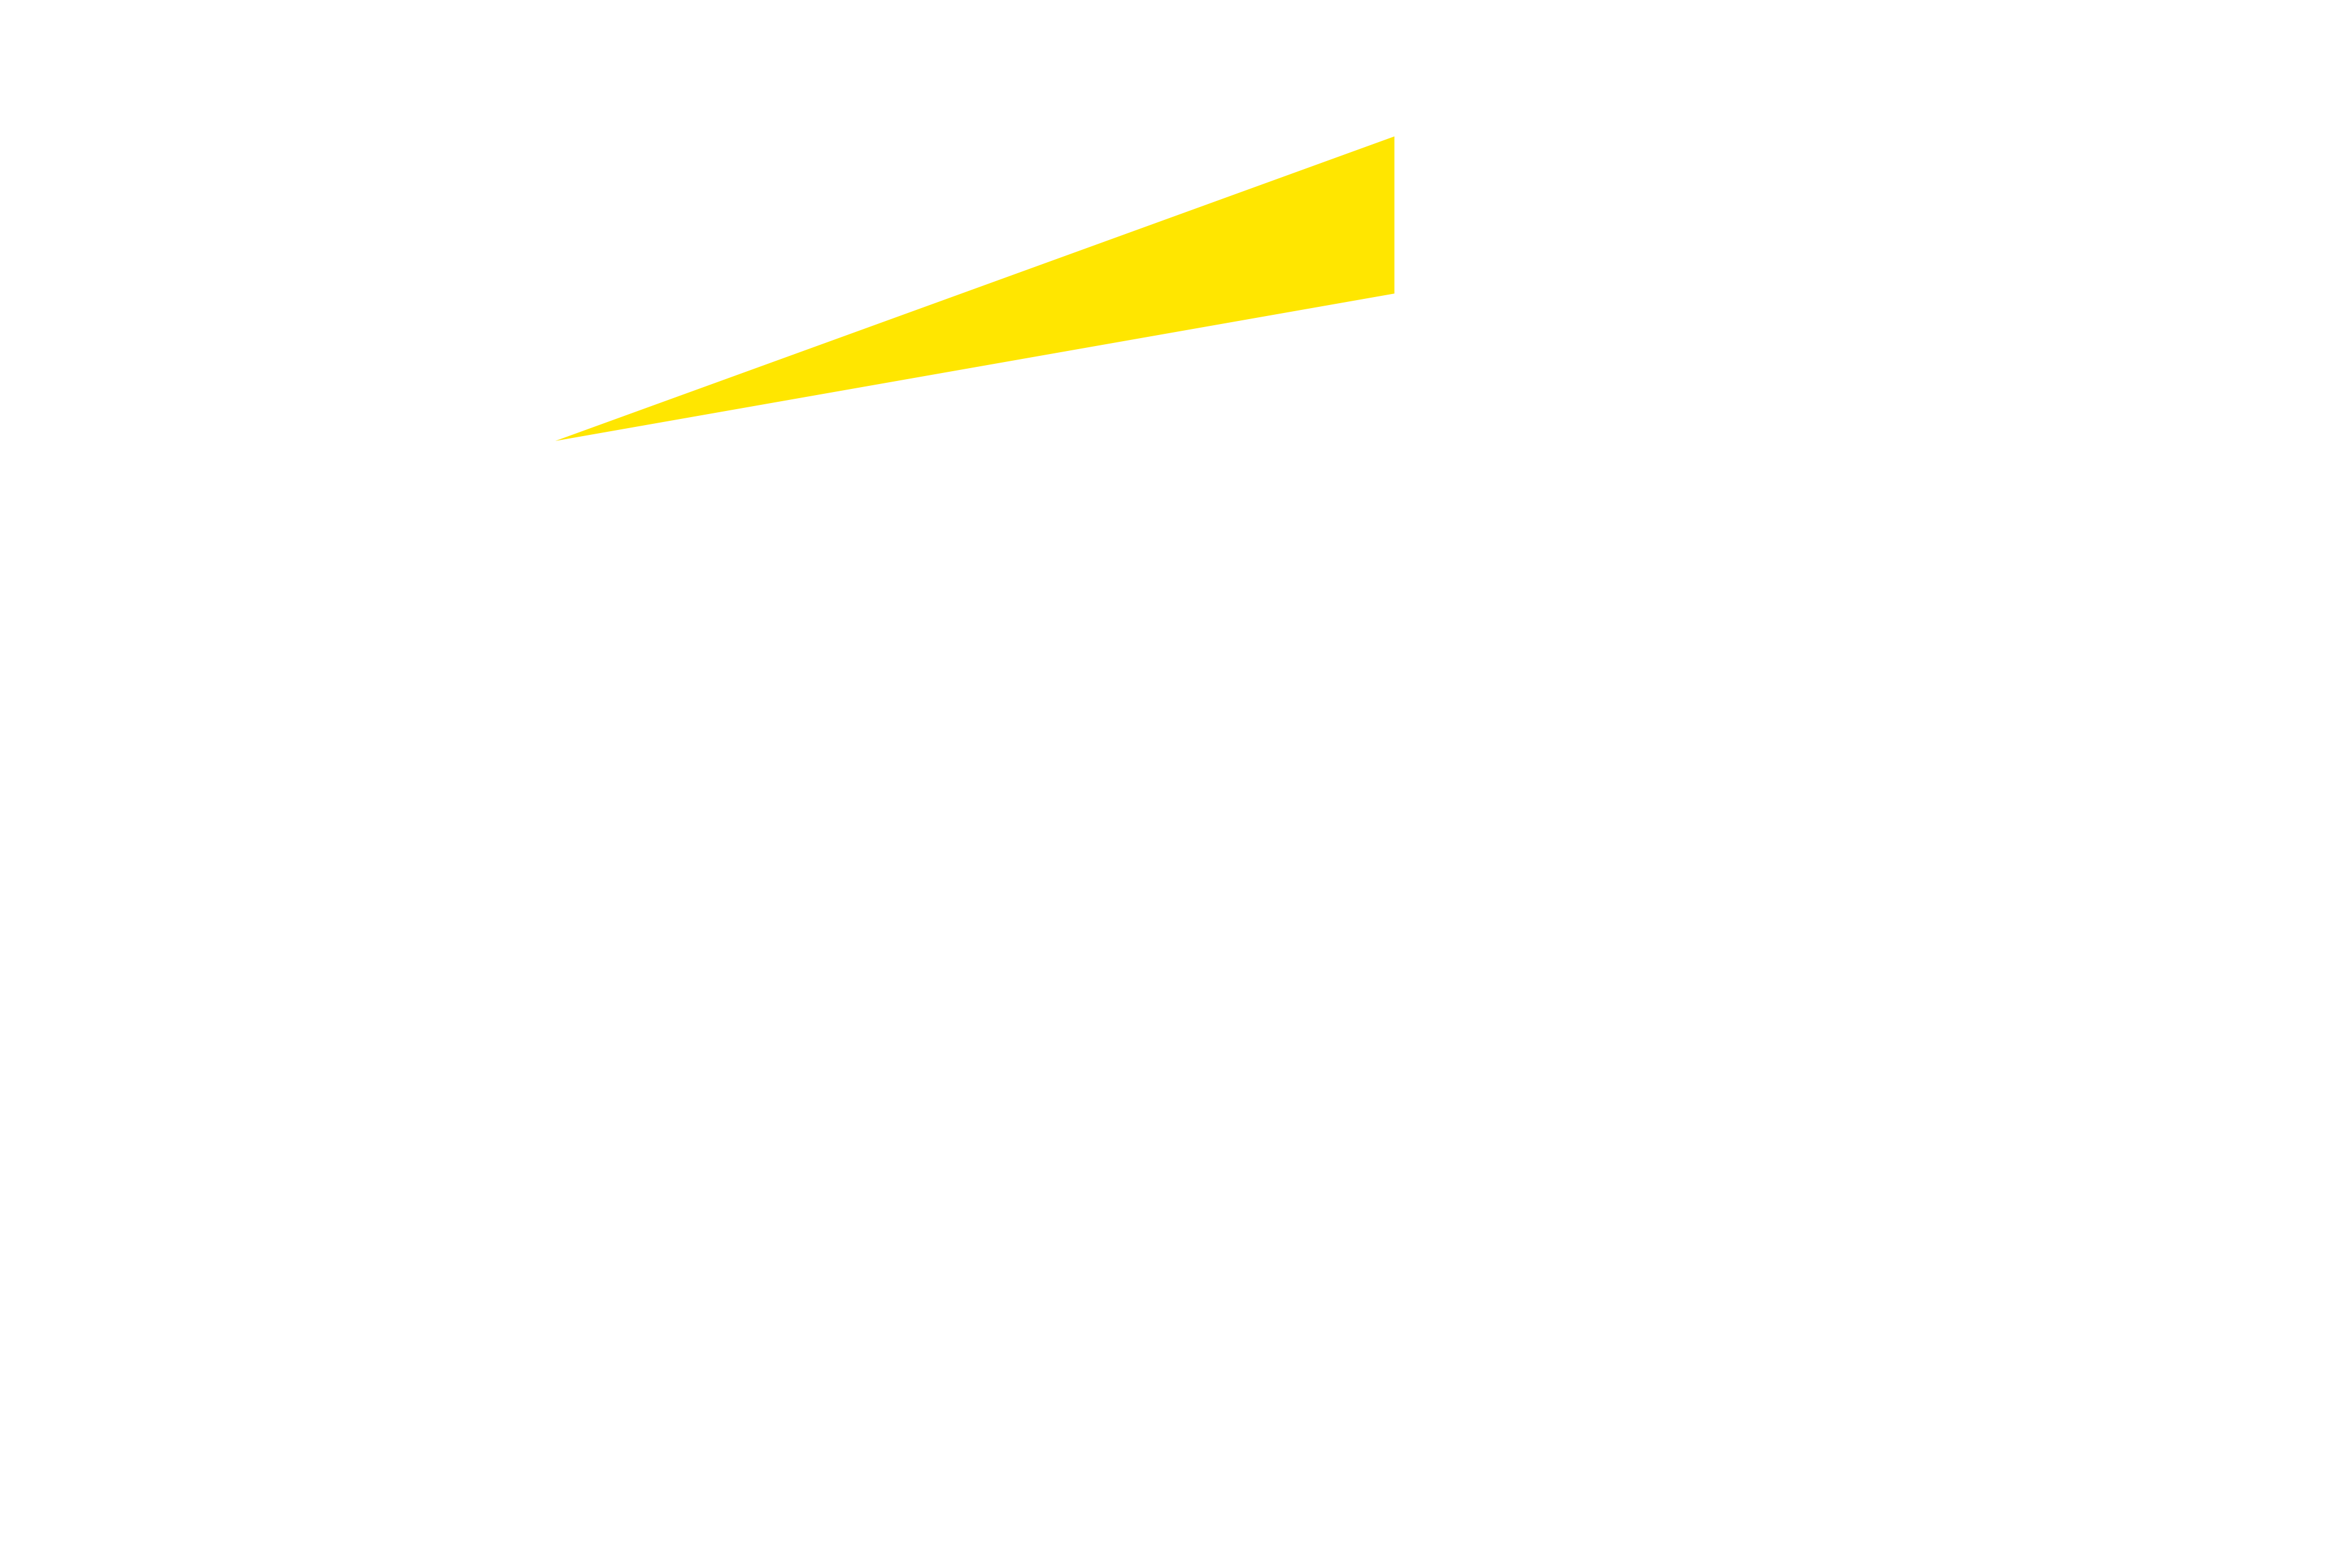 Logotipo de EY ifb